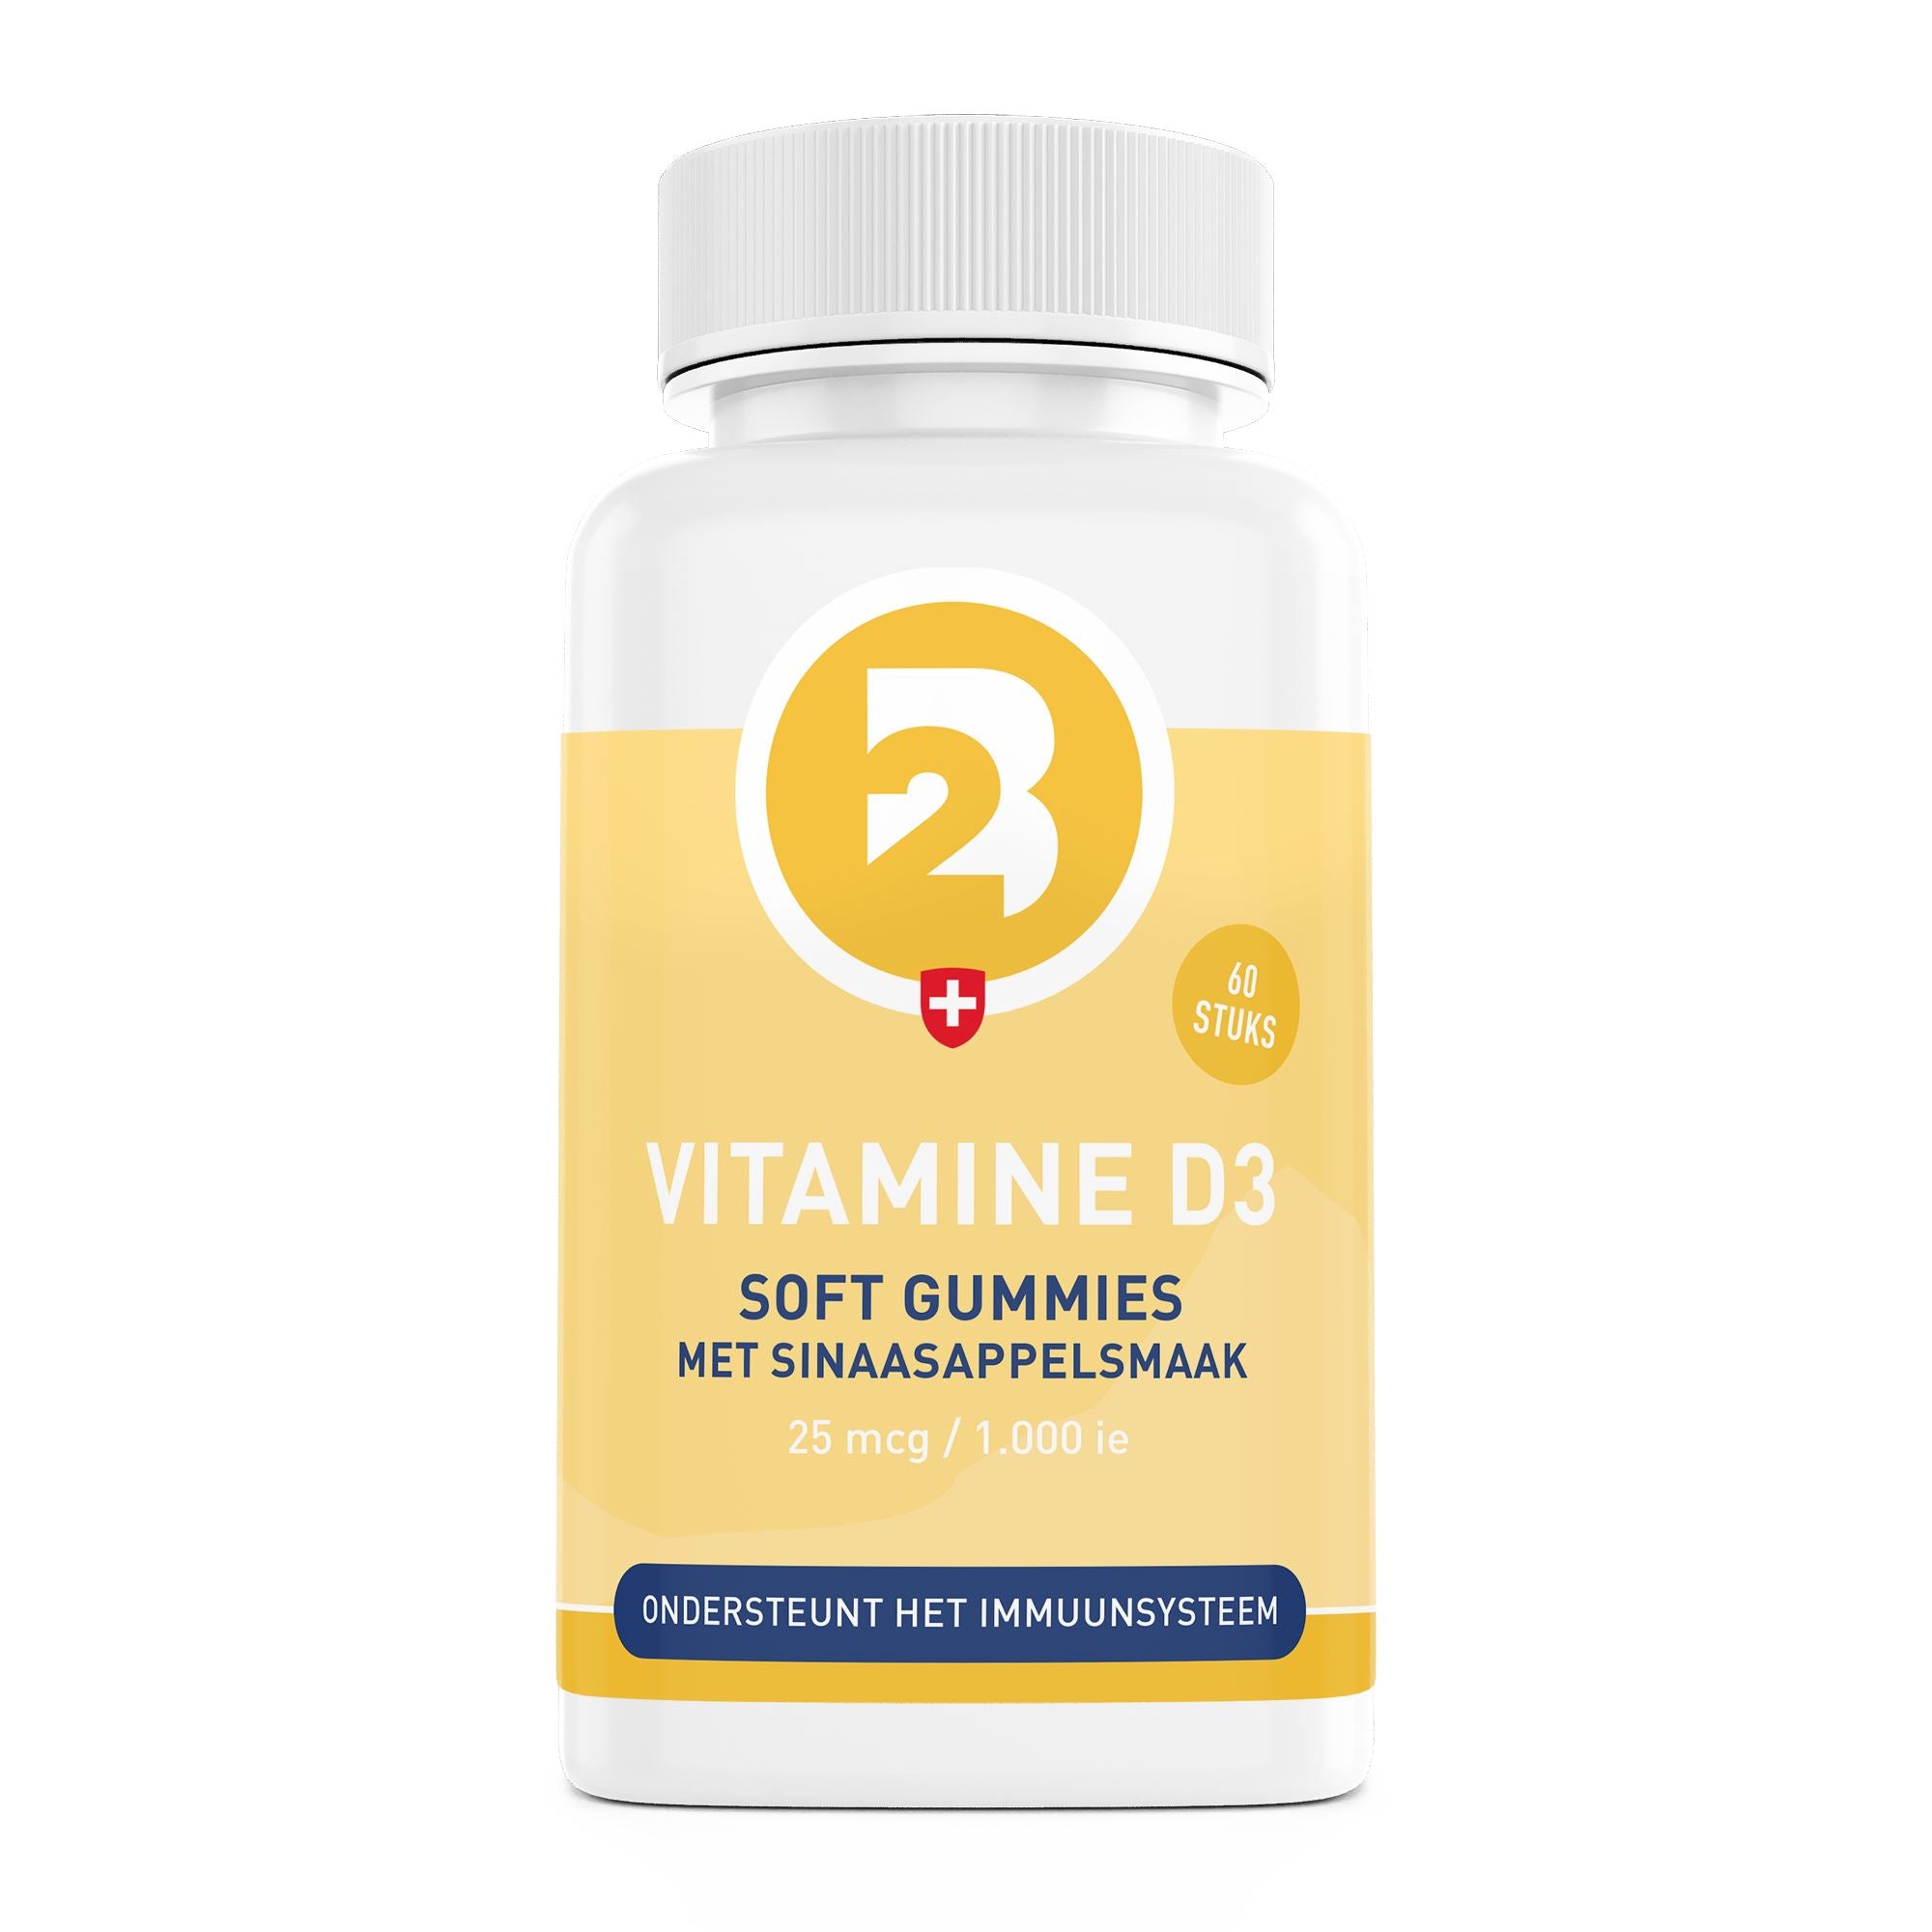 D3 vitamines